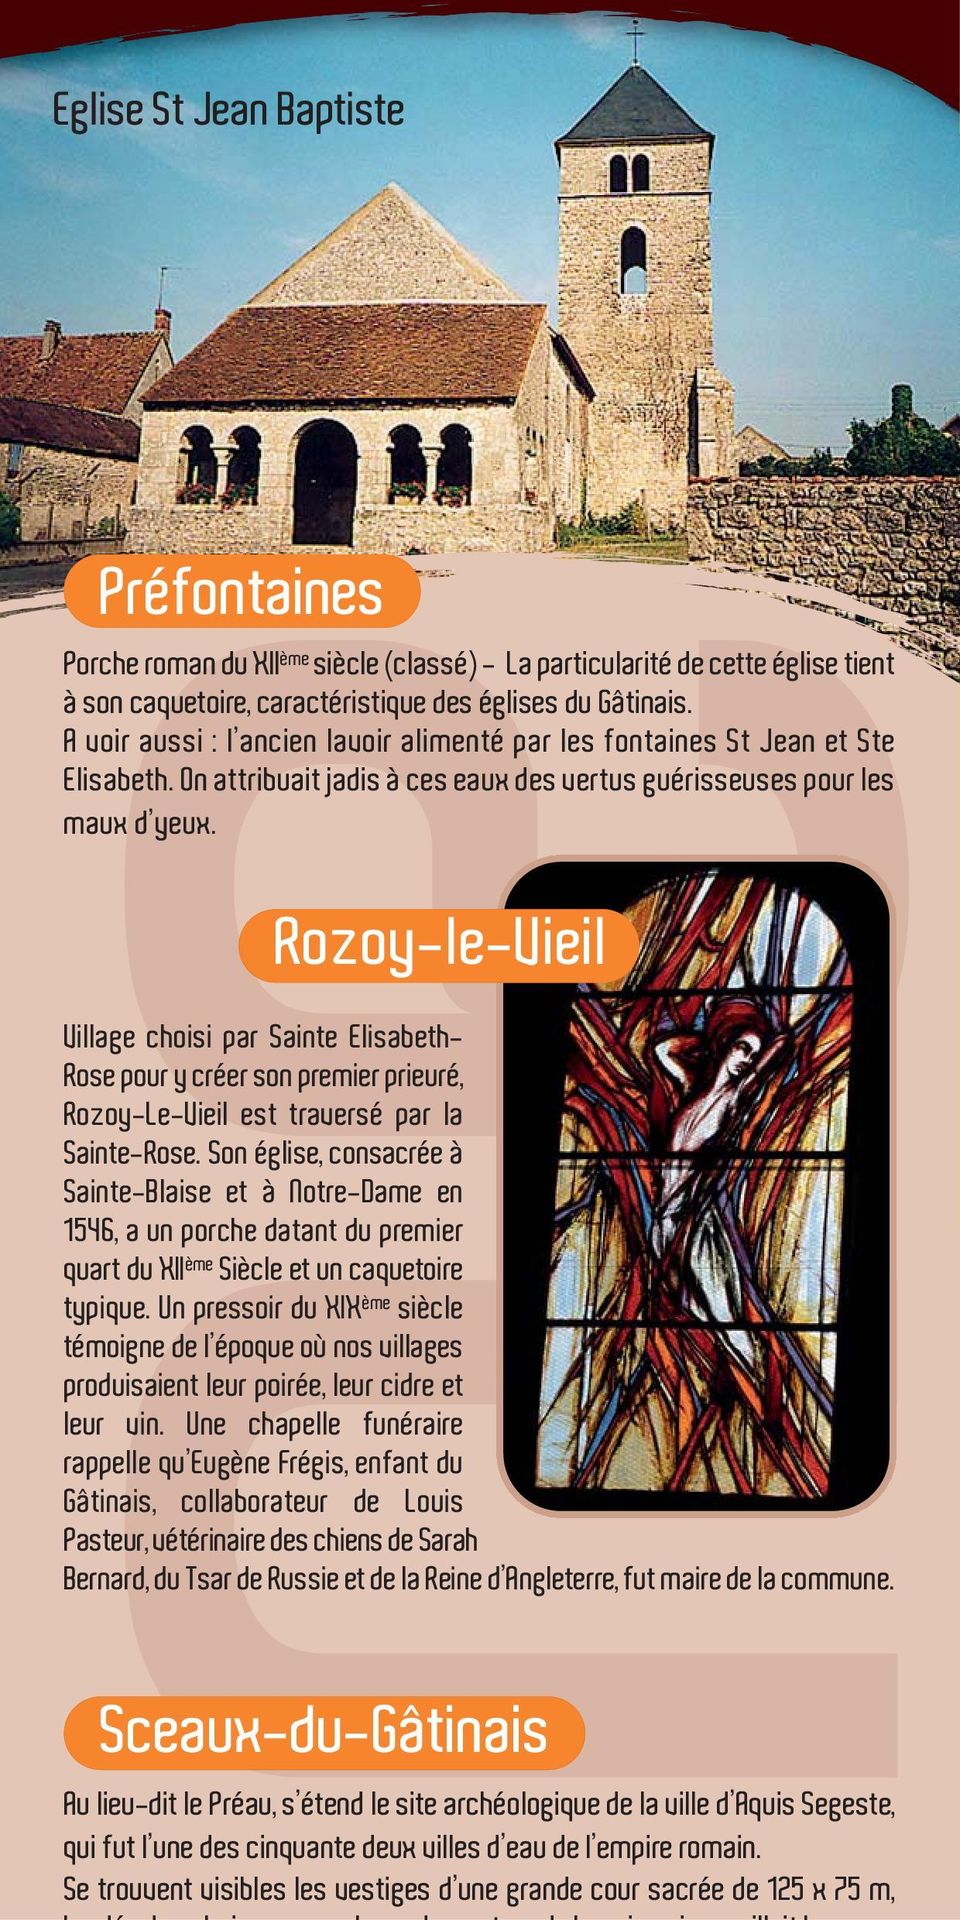 Rozoy-le-Vieil Village choisi par Sainte Elisabeth- Rose pour y créer son premier prieuré, Rozoy-Le-Vieil est traversé par la Sainte-Rose.